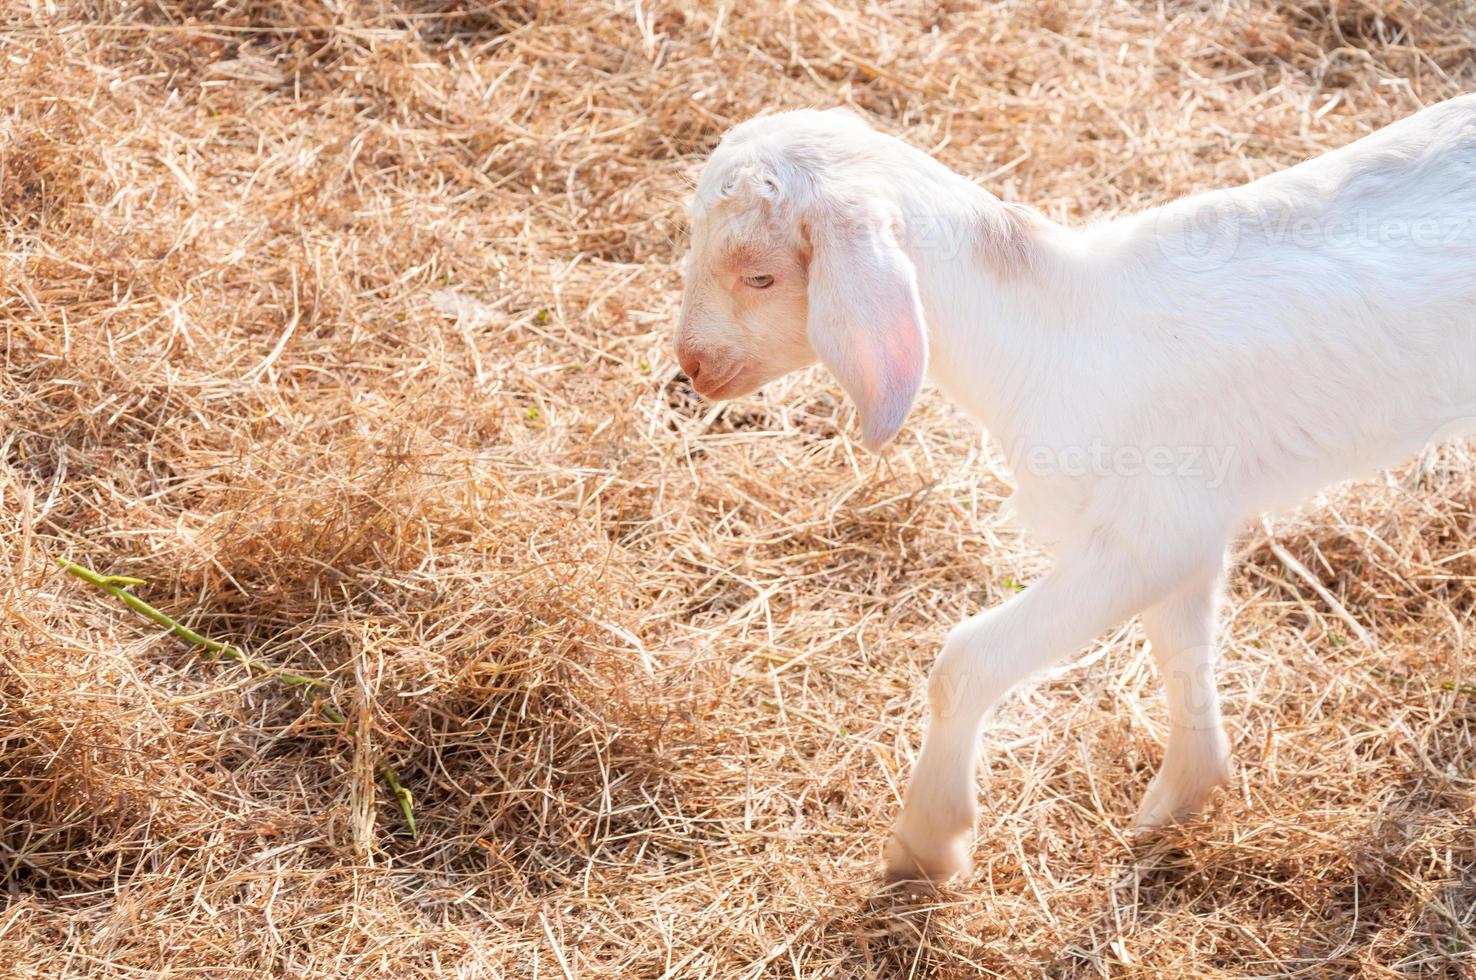 cabras blancas en la granja, cabra bebé en una granja foto